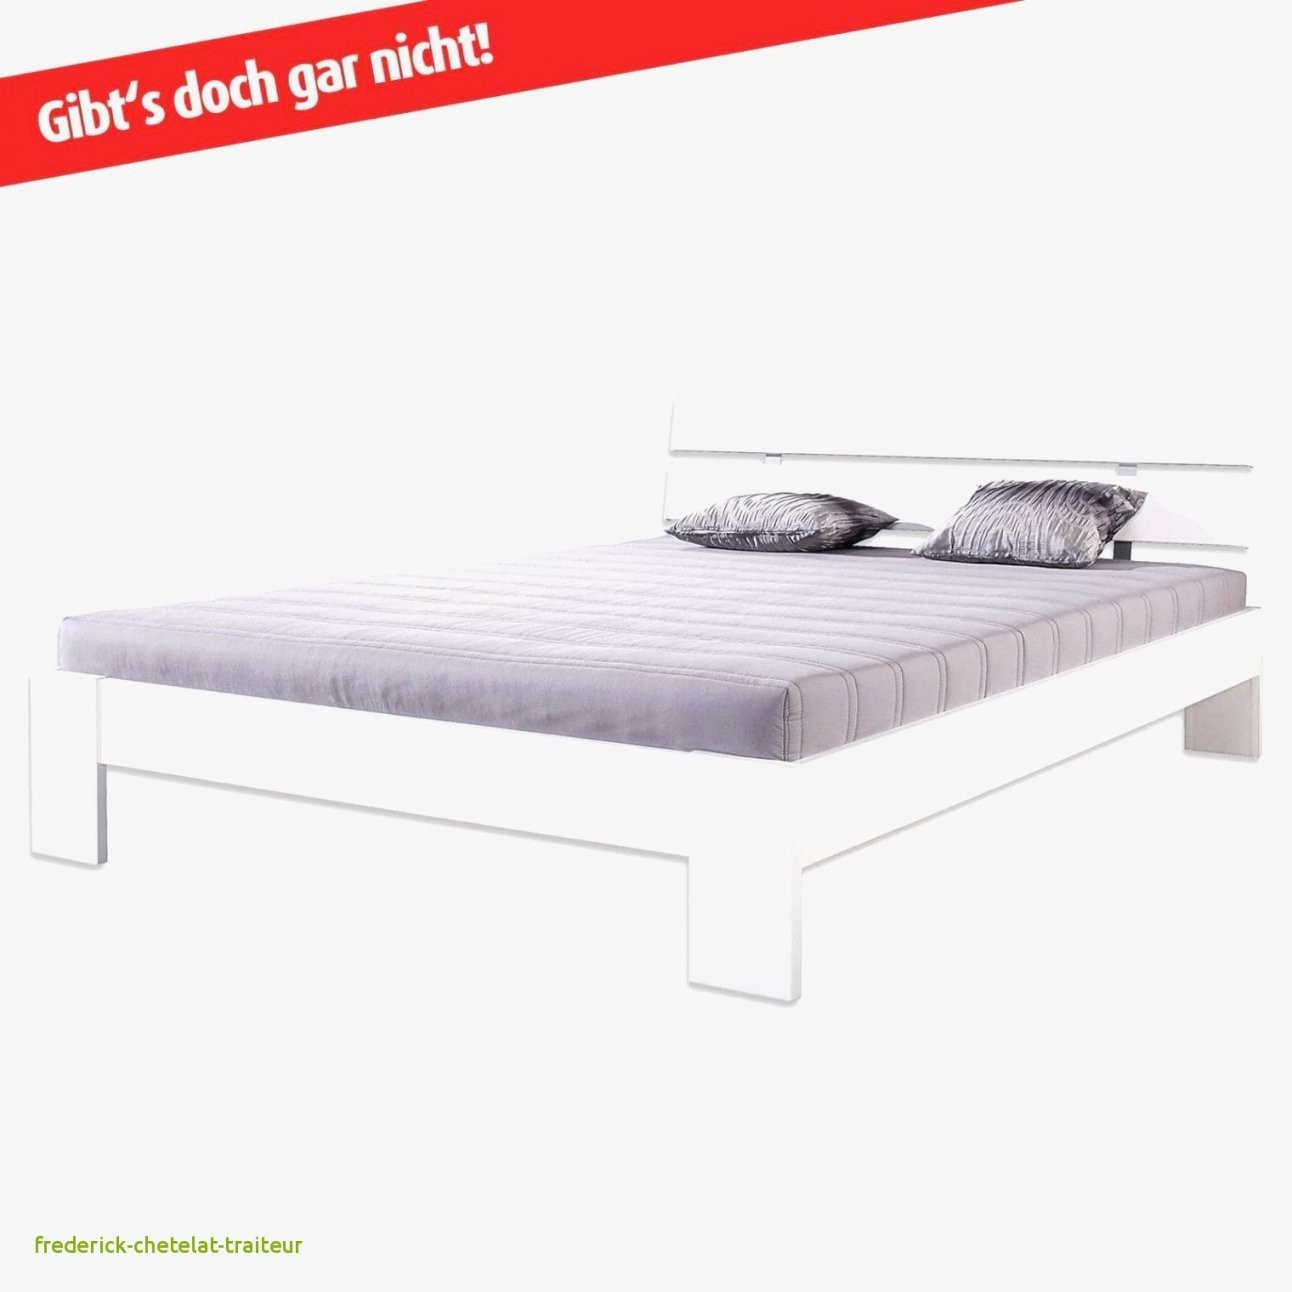 Diese Toll Bett 140×200 Mit Matratze Konzept – Frederickchetelat von Gebrauchte Betten 140X200 Bild